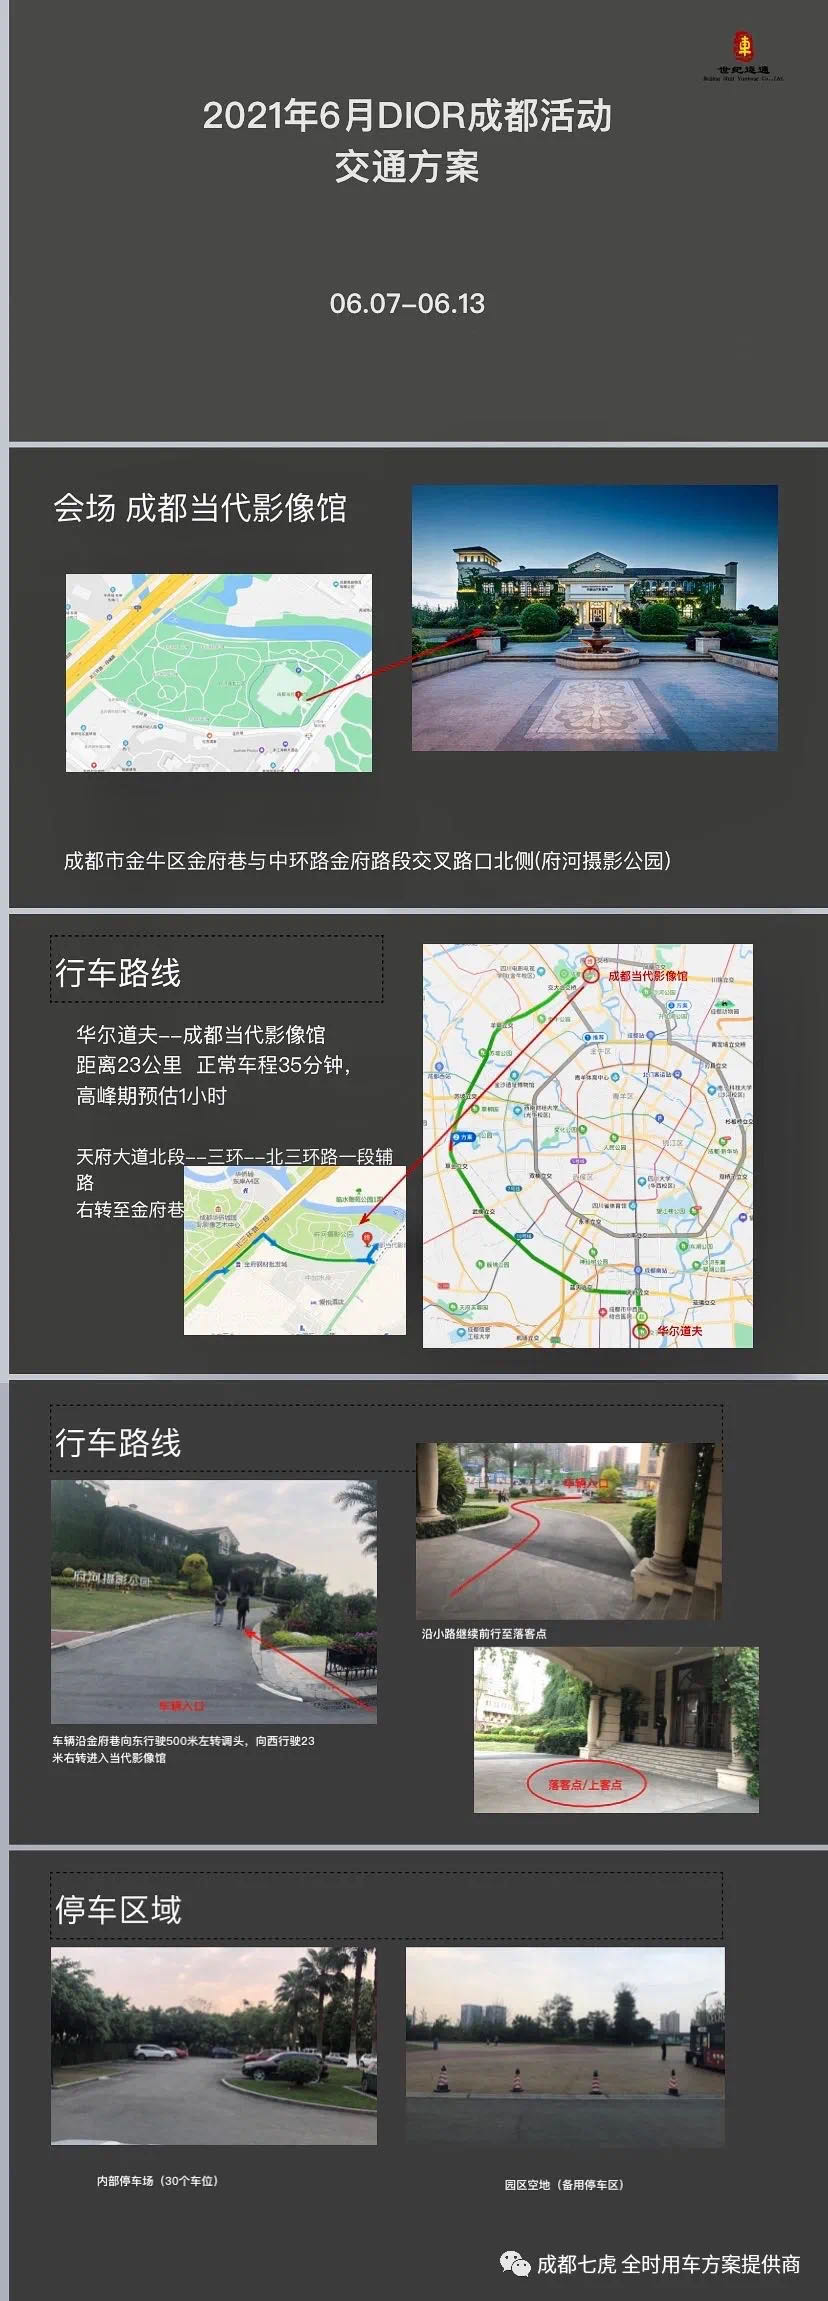 2021-06月 Di奥 成都活动 大车团 接送用车